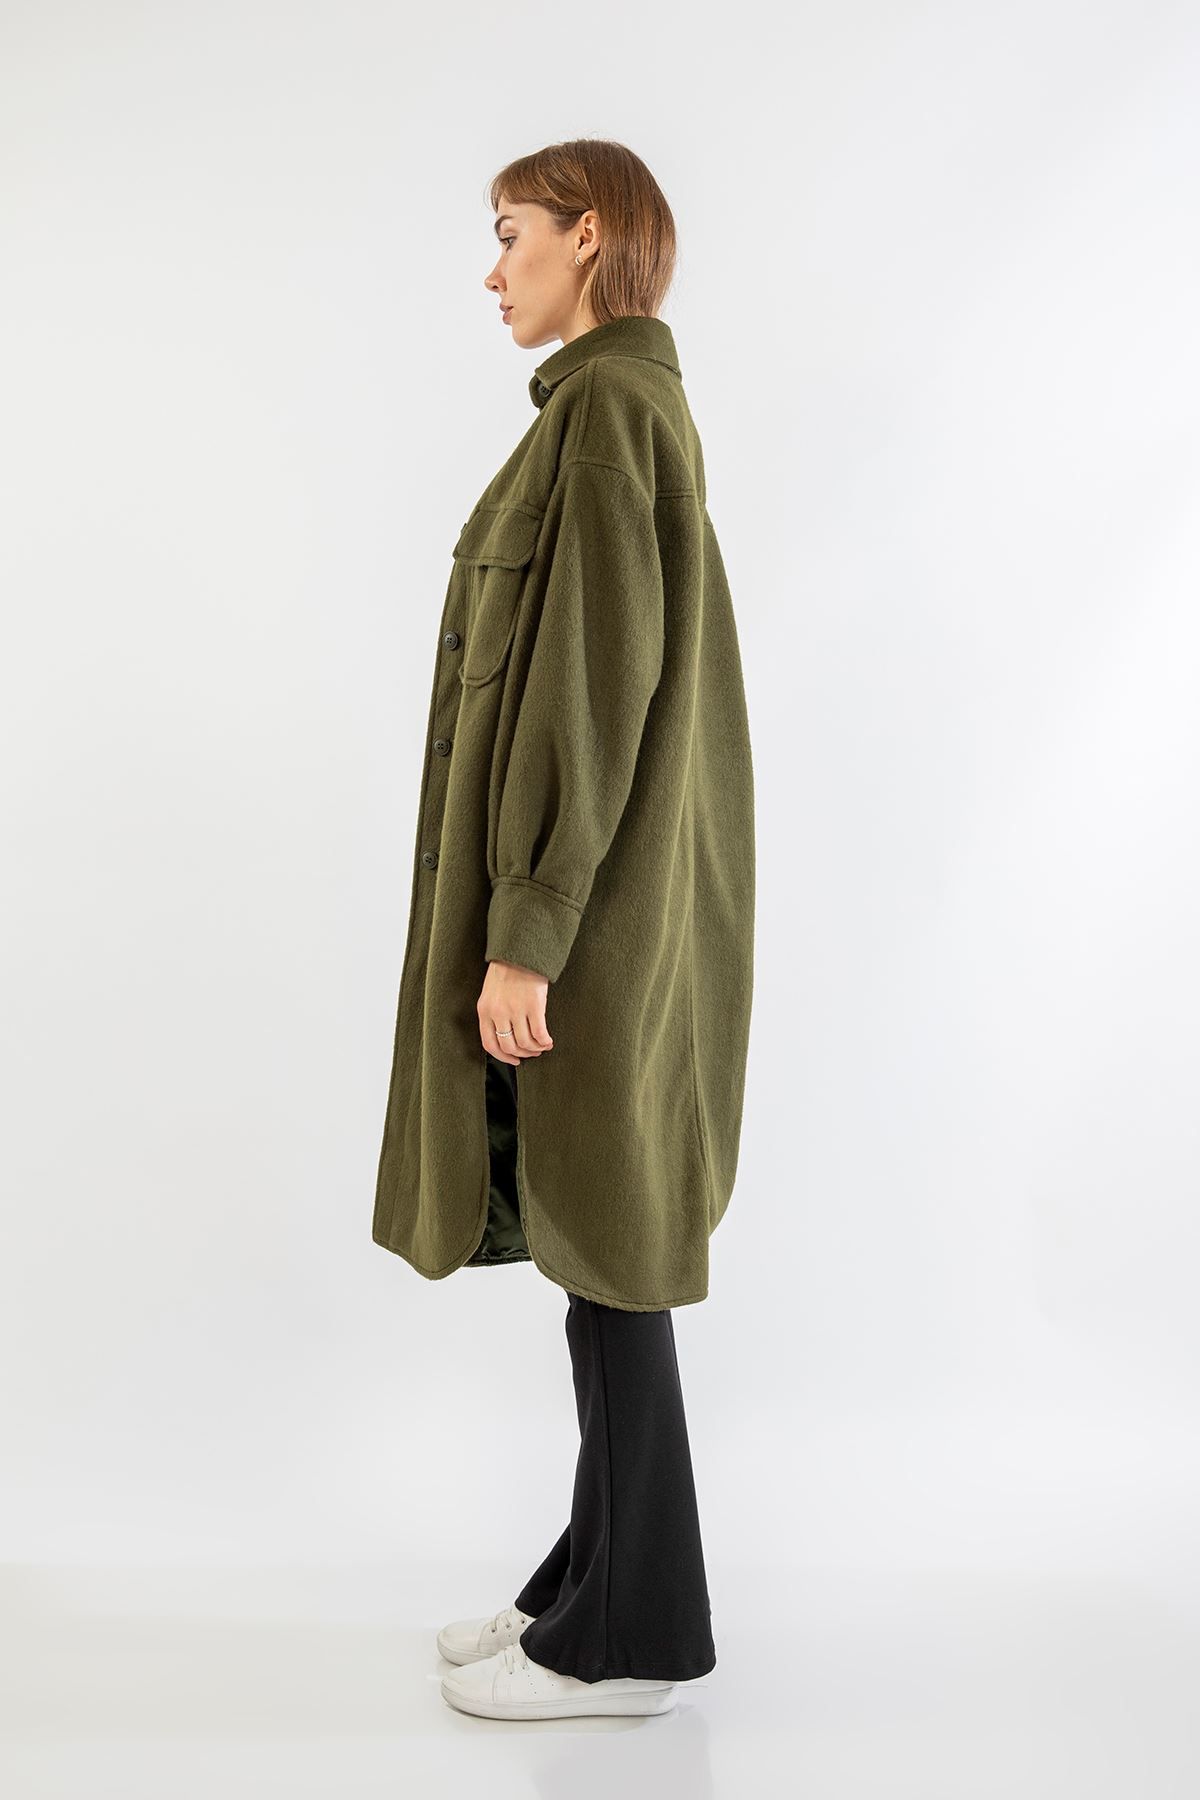 Oduncu Kumaş Gömlek Yaka Oversize/Salaş Kadın Ceket-Haki